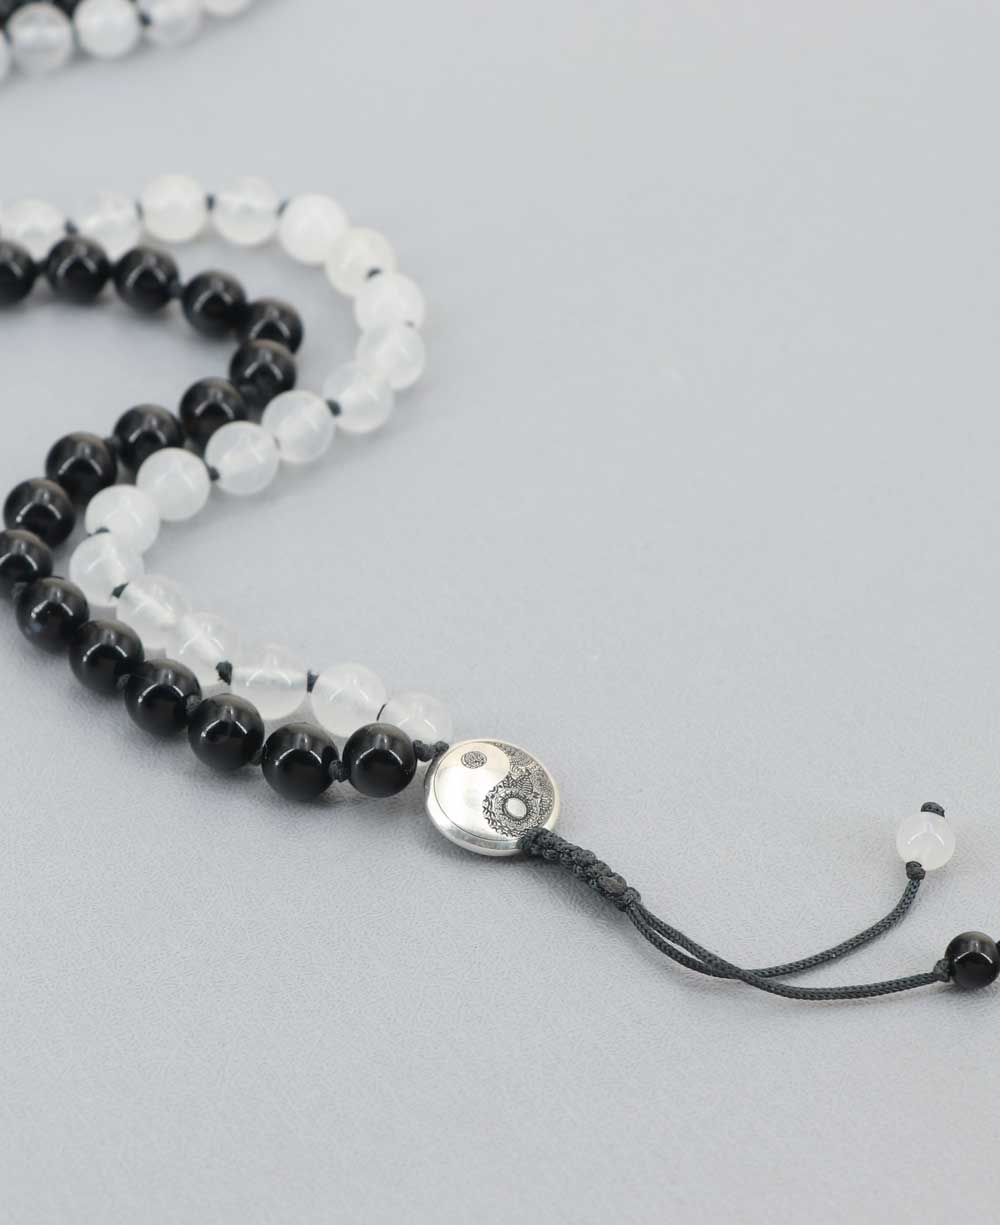 Black Onyx Knotted 108 Mala Beads Necklace Prayer Meditation